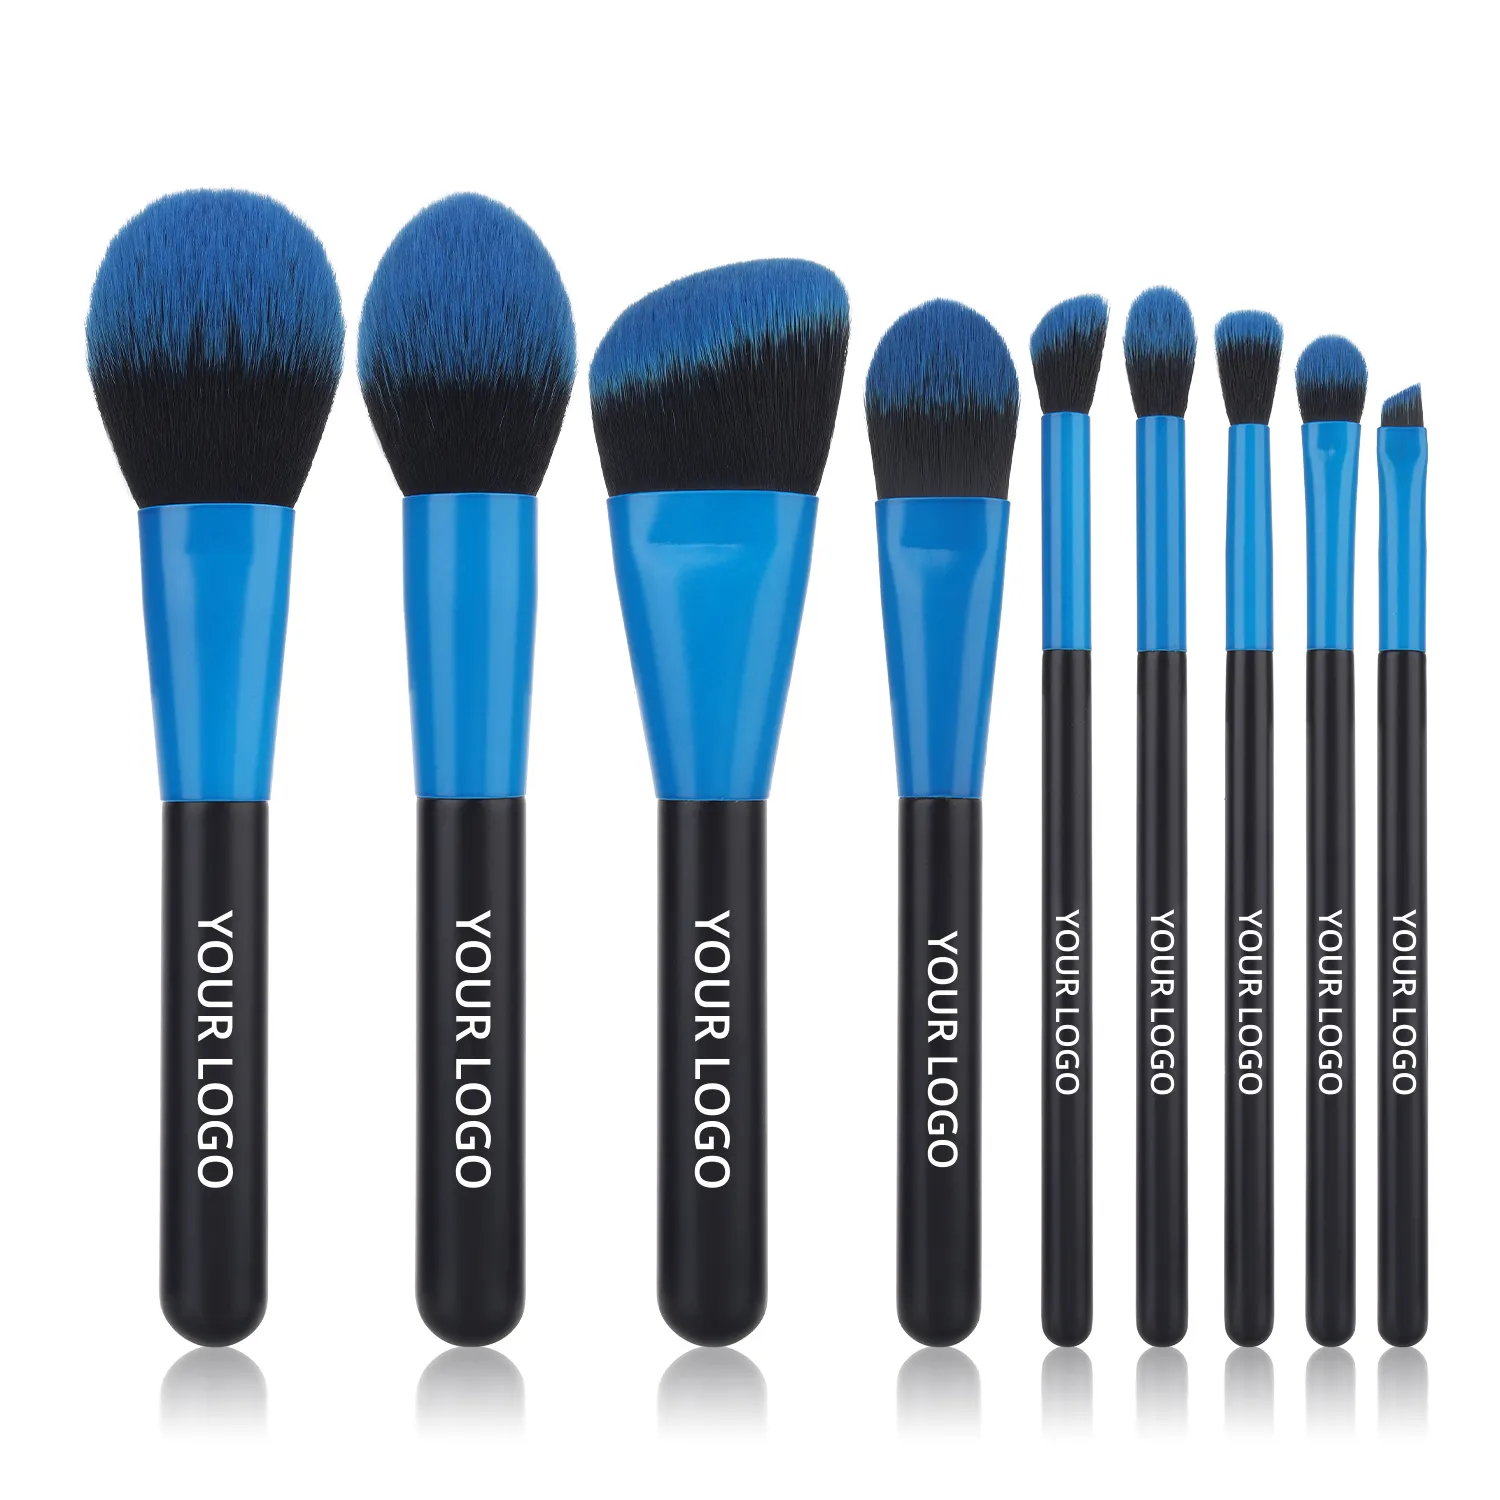 Gracedo – pinceaux de maquillage Logo personnalisé, vente en gros, ensemble de pinceaux de maquillage pour fond de teint, ombre à paupières, Kit d'outils